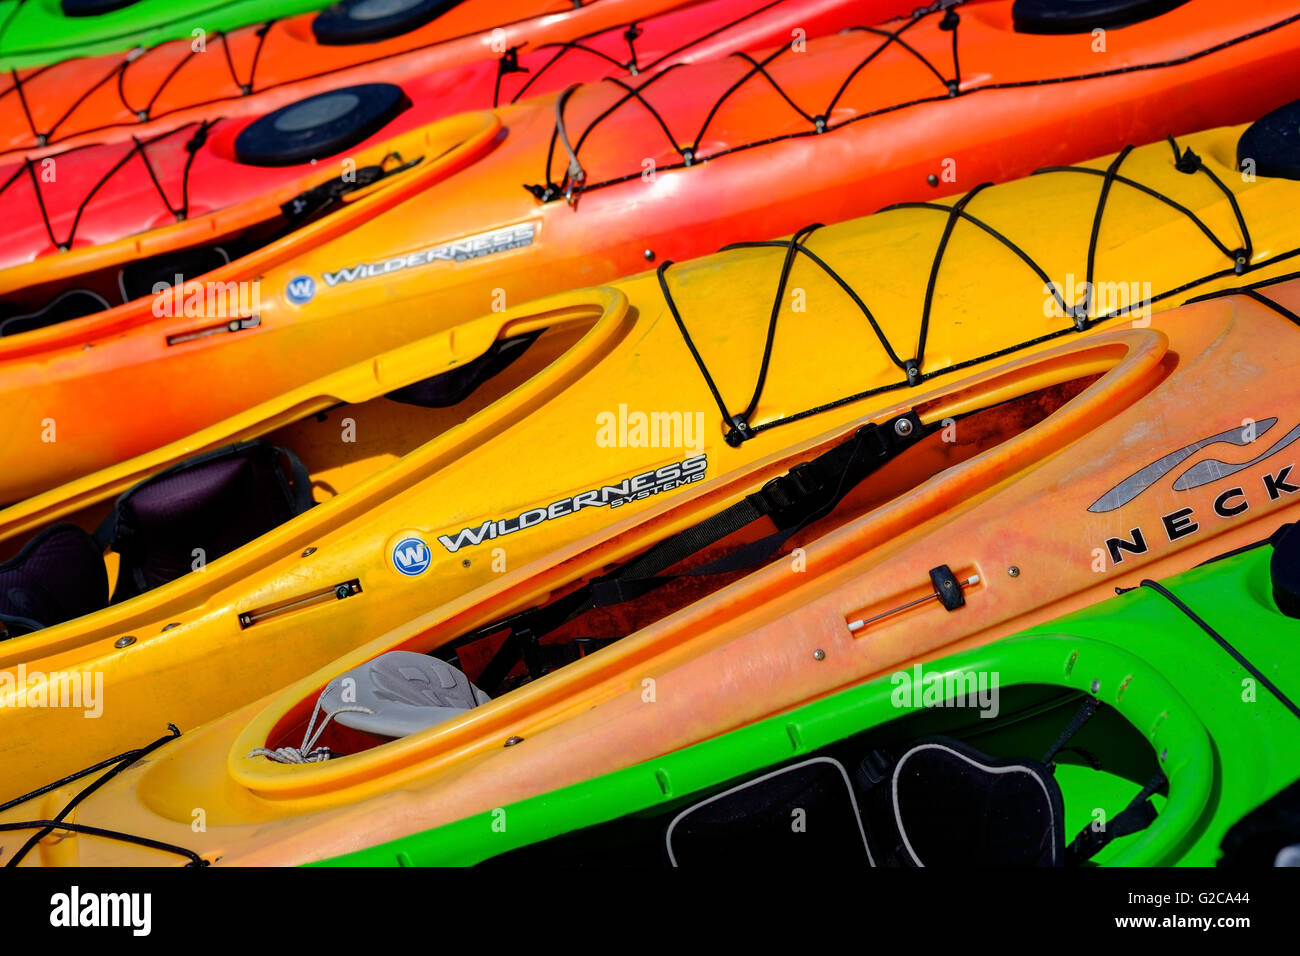 Canoës kayaks colorés sur une plage. Banque D'Images